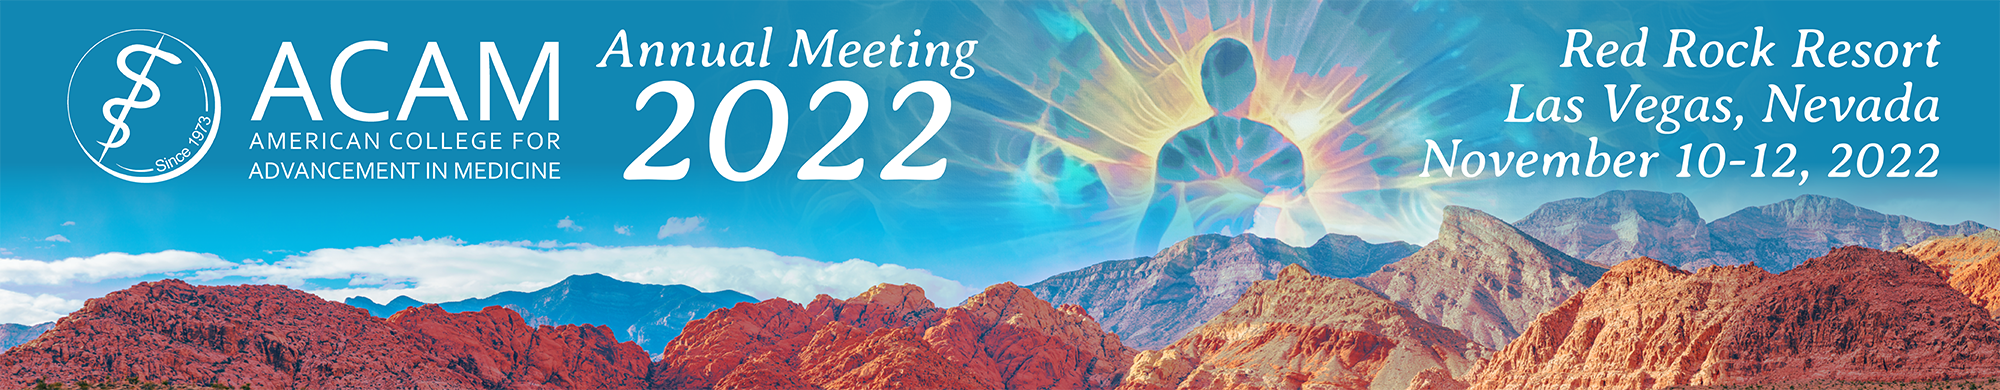 ACAM Annual Meeting 2022